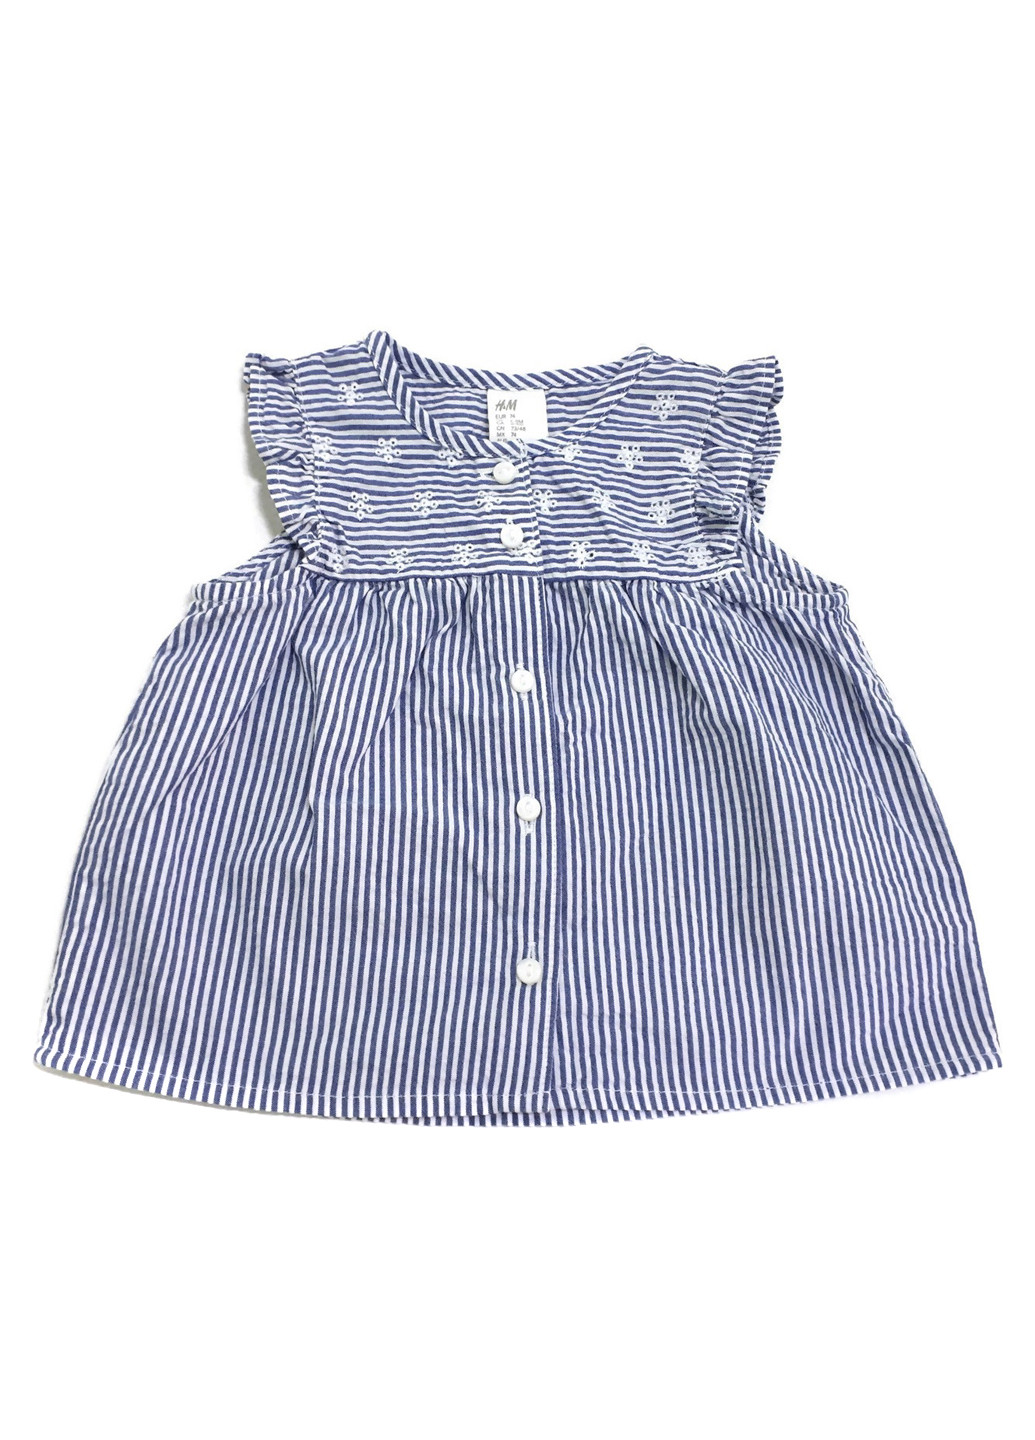 Синяя в полоску блузка H&M летняя